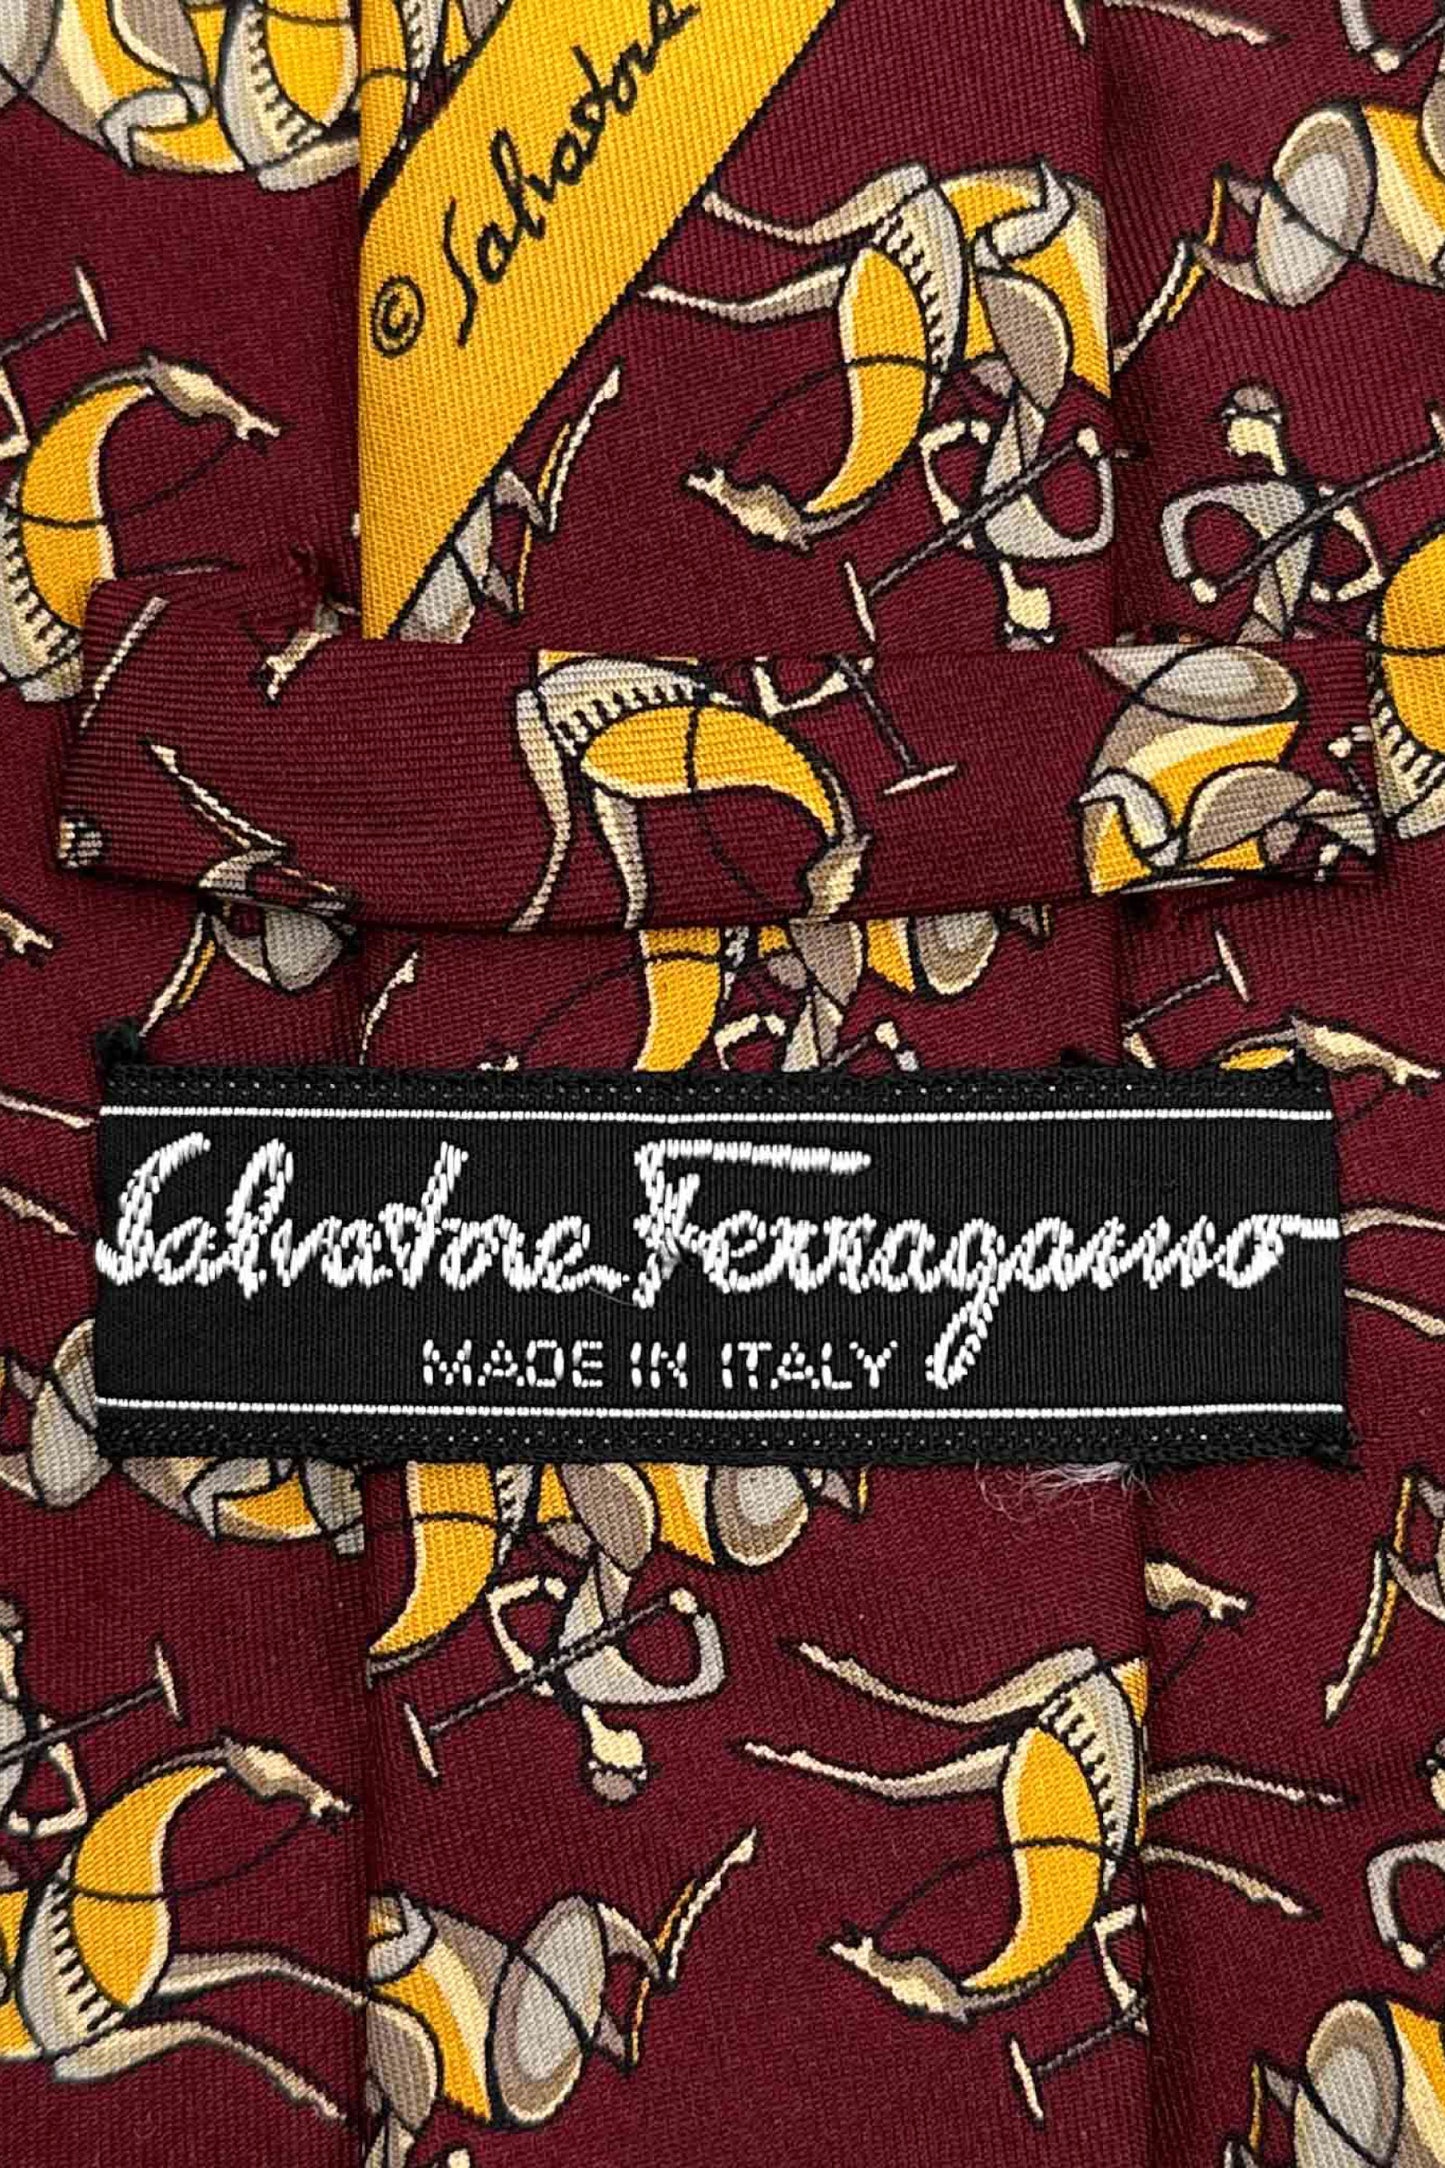 Made in ITALY Salvatore Ferragamo silk tie